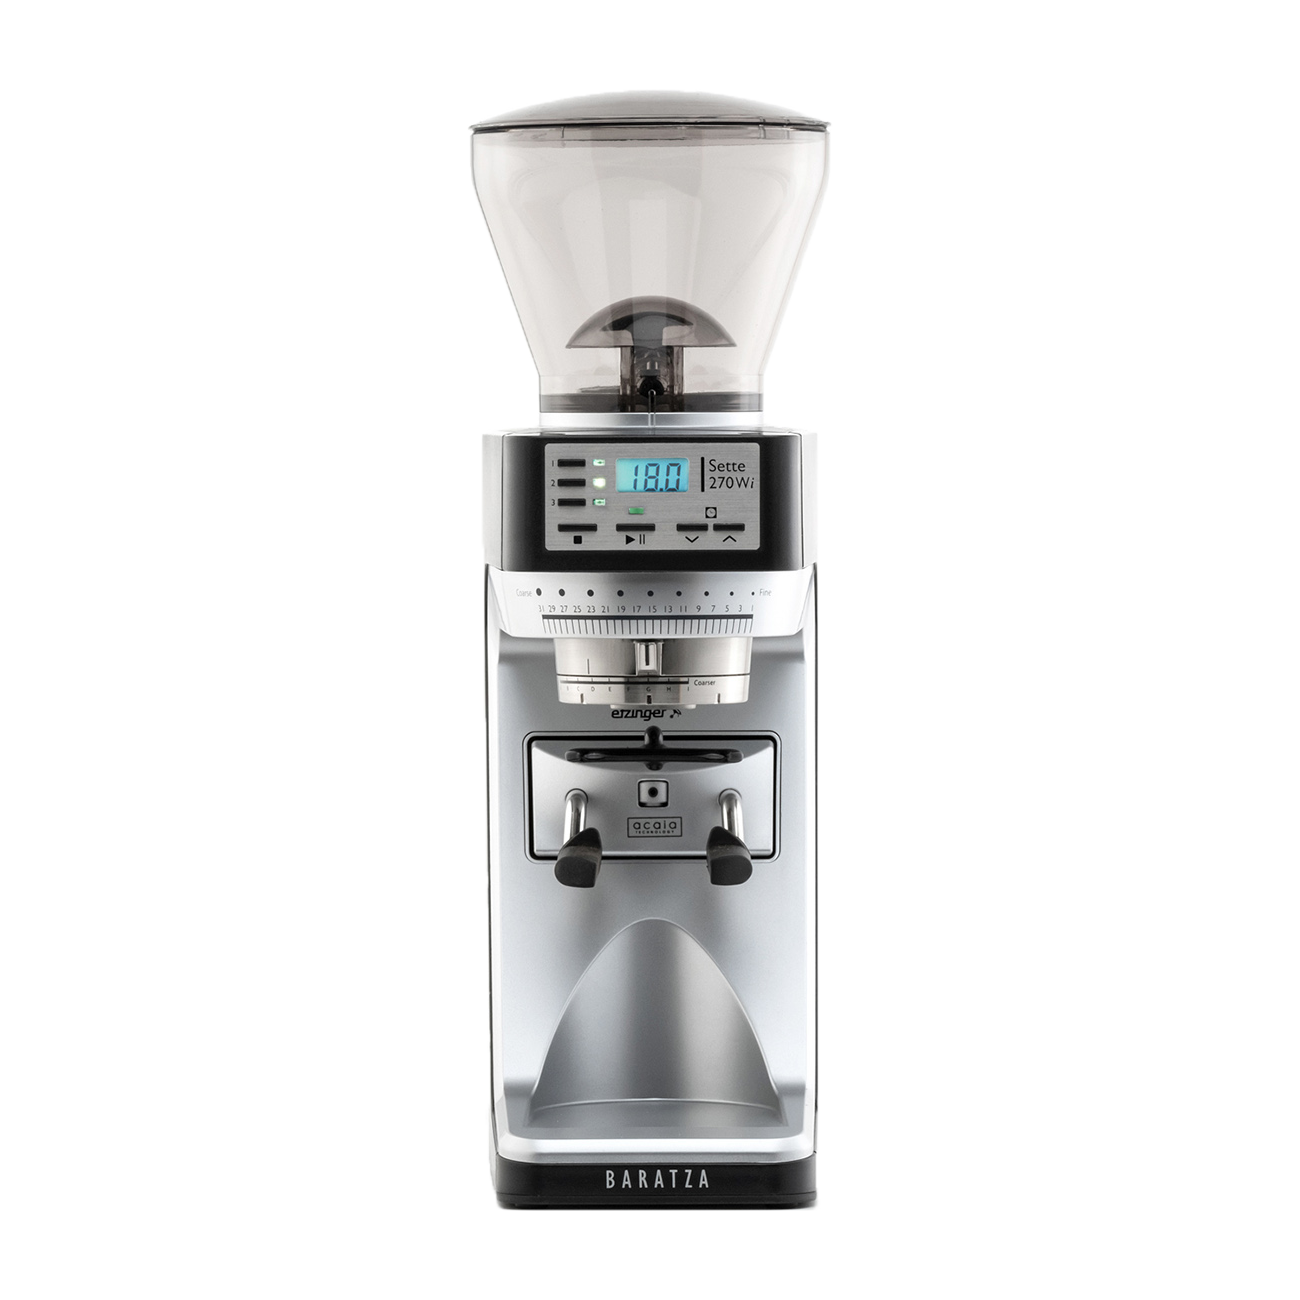 Baratza Sette 270Wi | Espresso Grinder | 120V | 40mm Conical Burrs